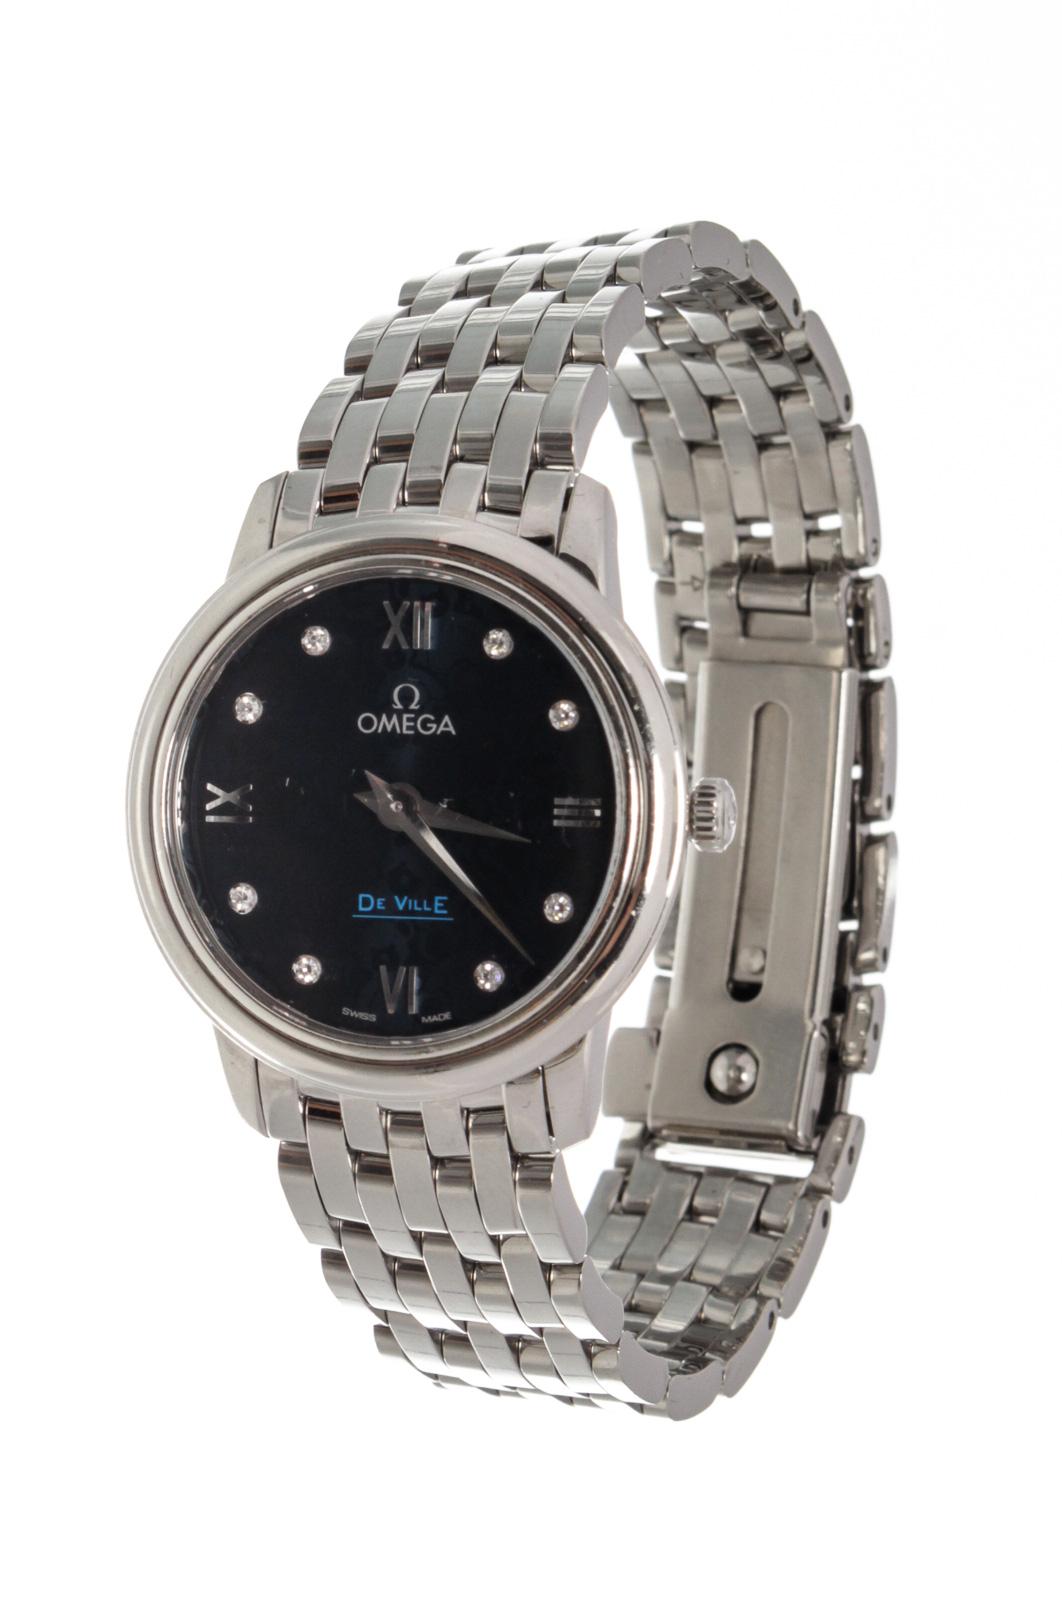 Omega Silver De Ville Prestige Watch with silver-toneÂ hardware.

52970MSC